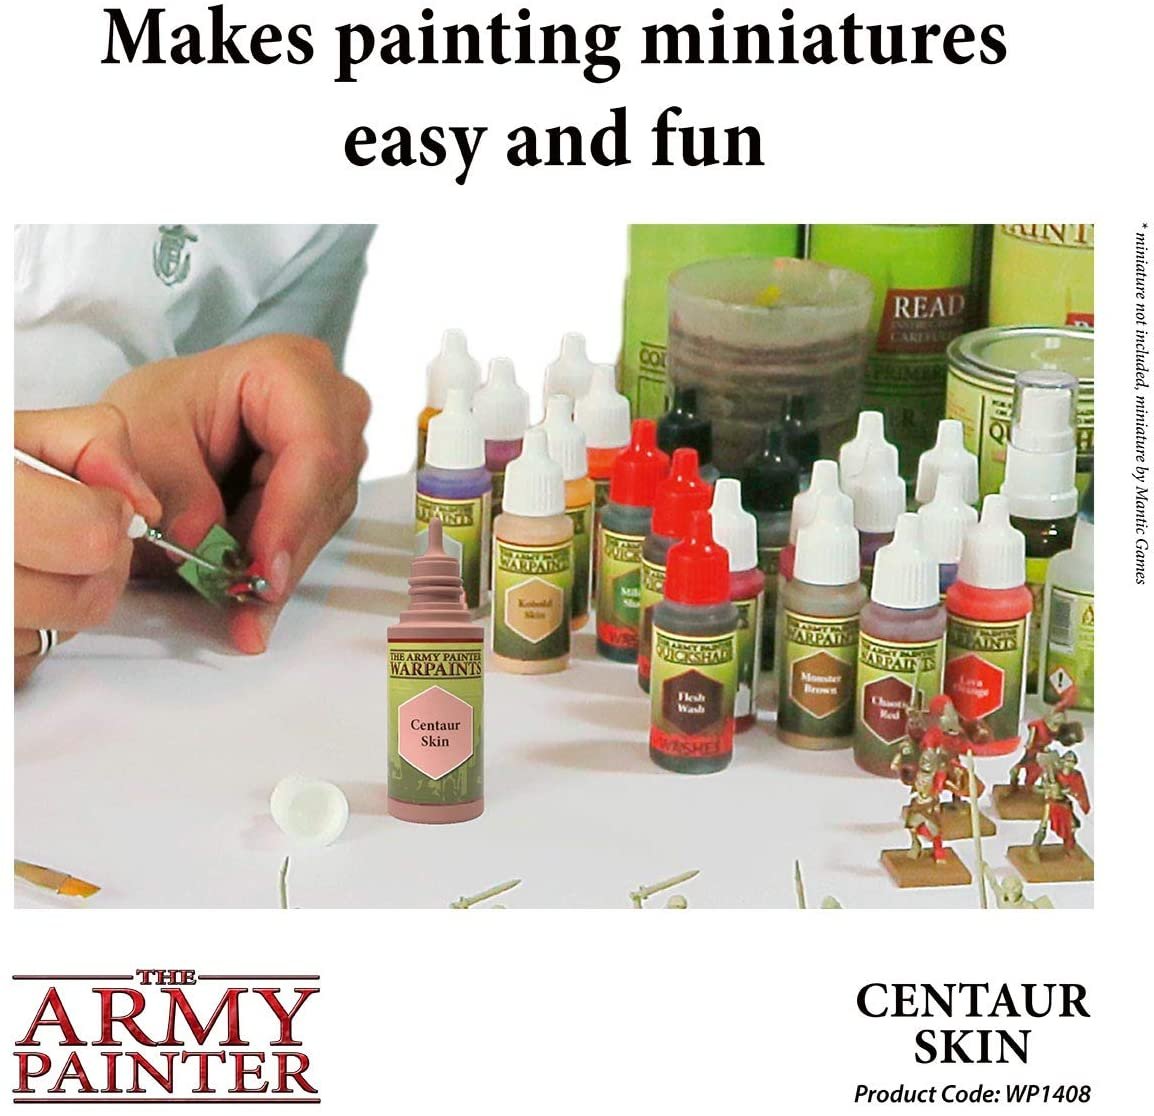 The Army Painter - Warpaints: Centaur Skin (18ml/0.6oz)